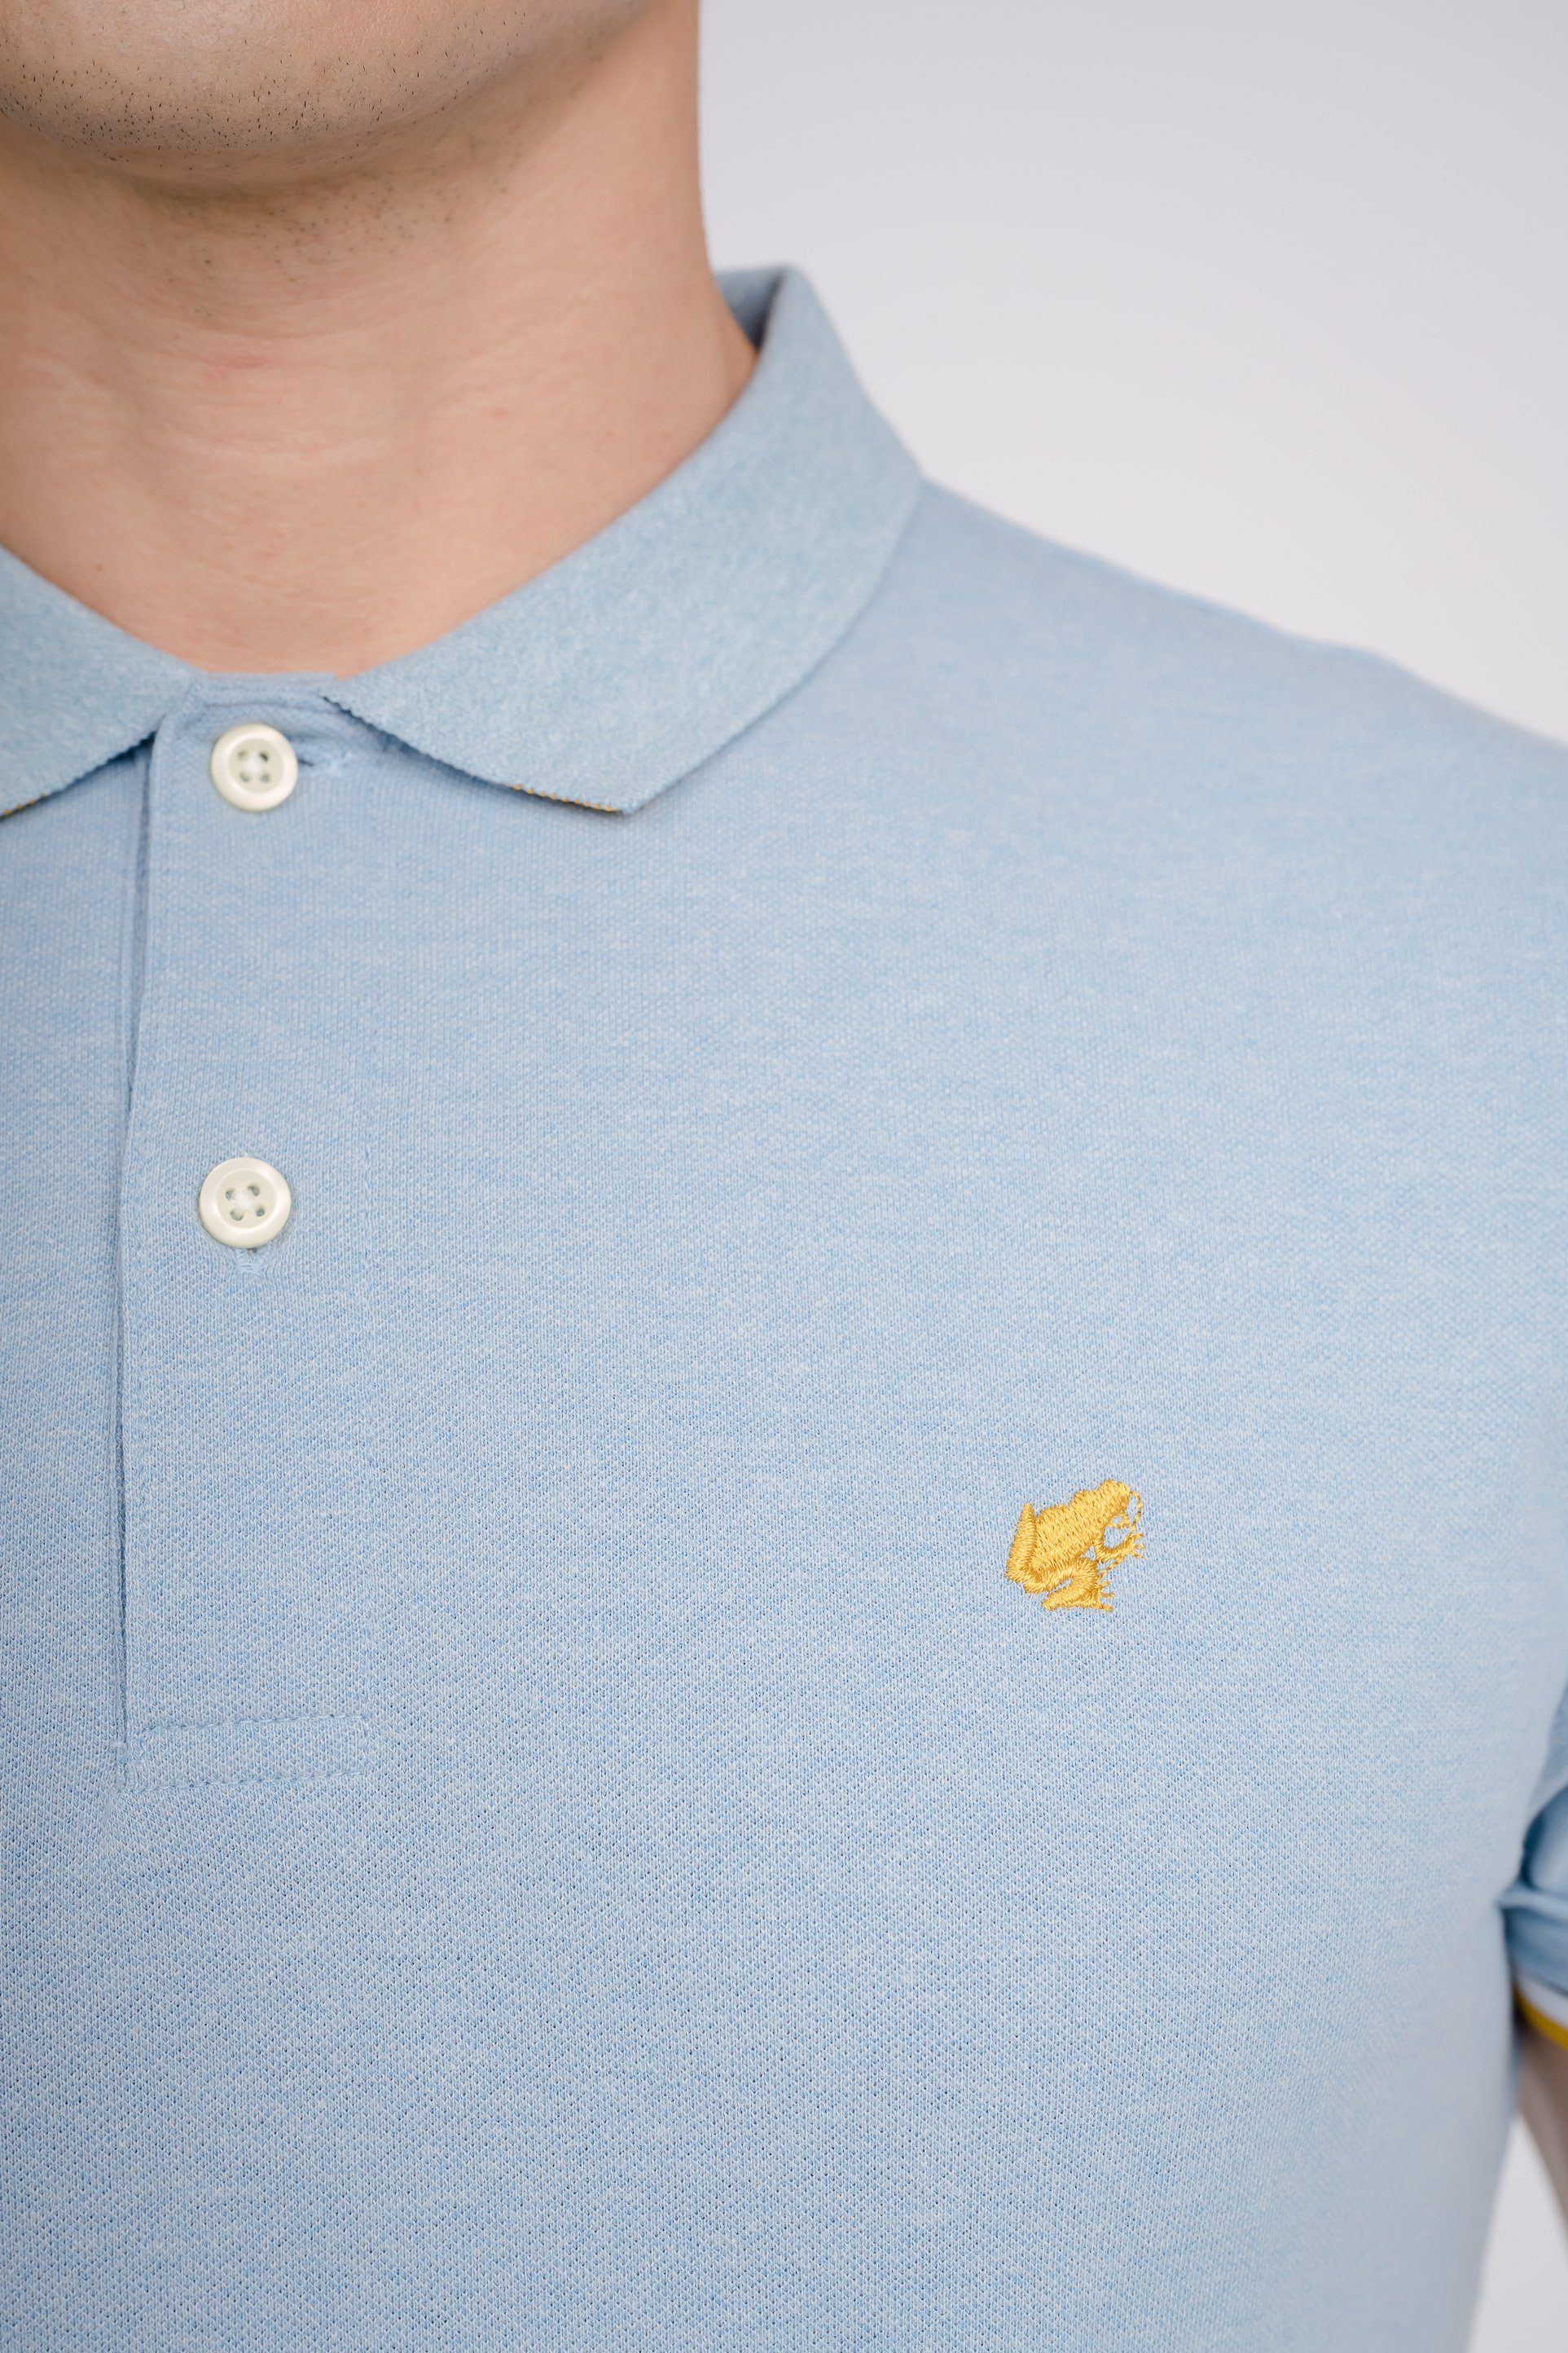 GIORDANO Poloshirt mit hellblau kleiner Frosch-Stickerei